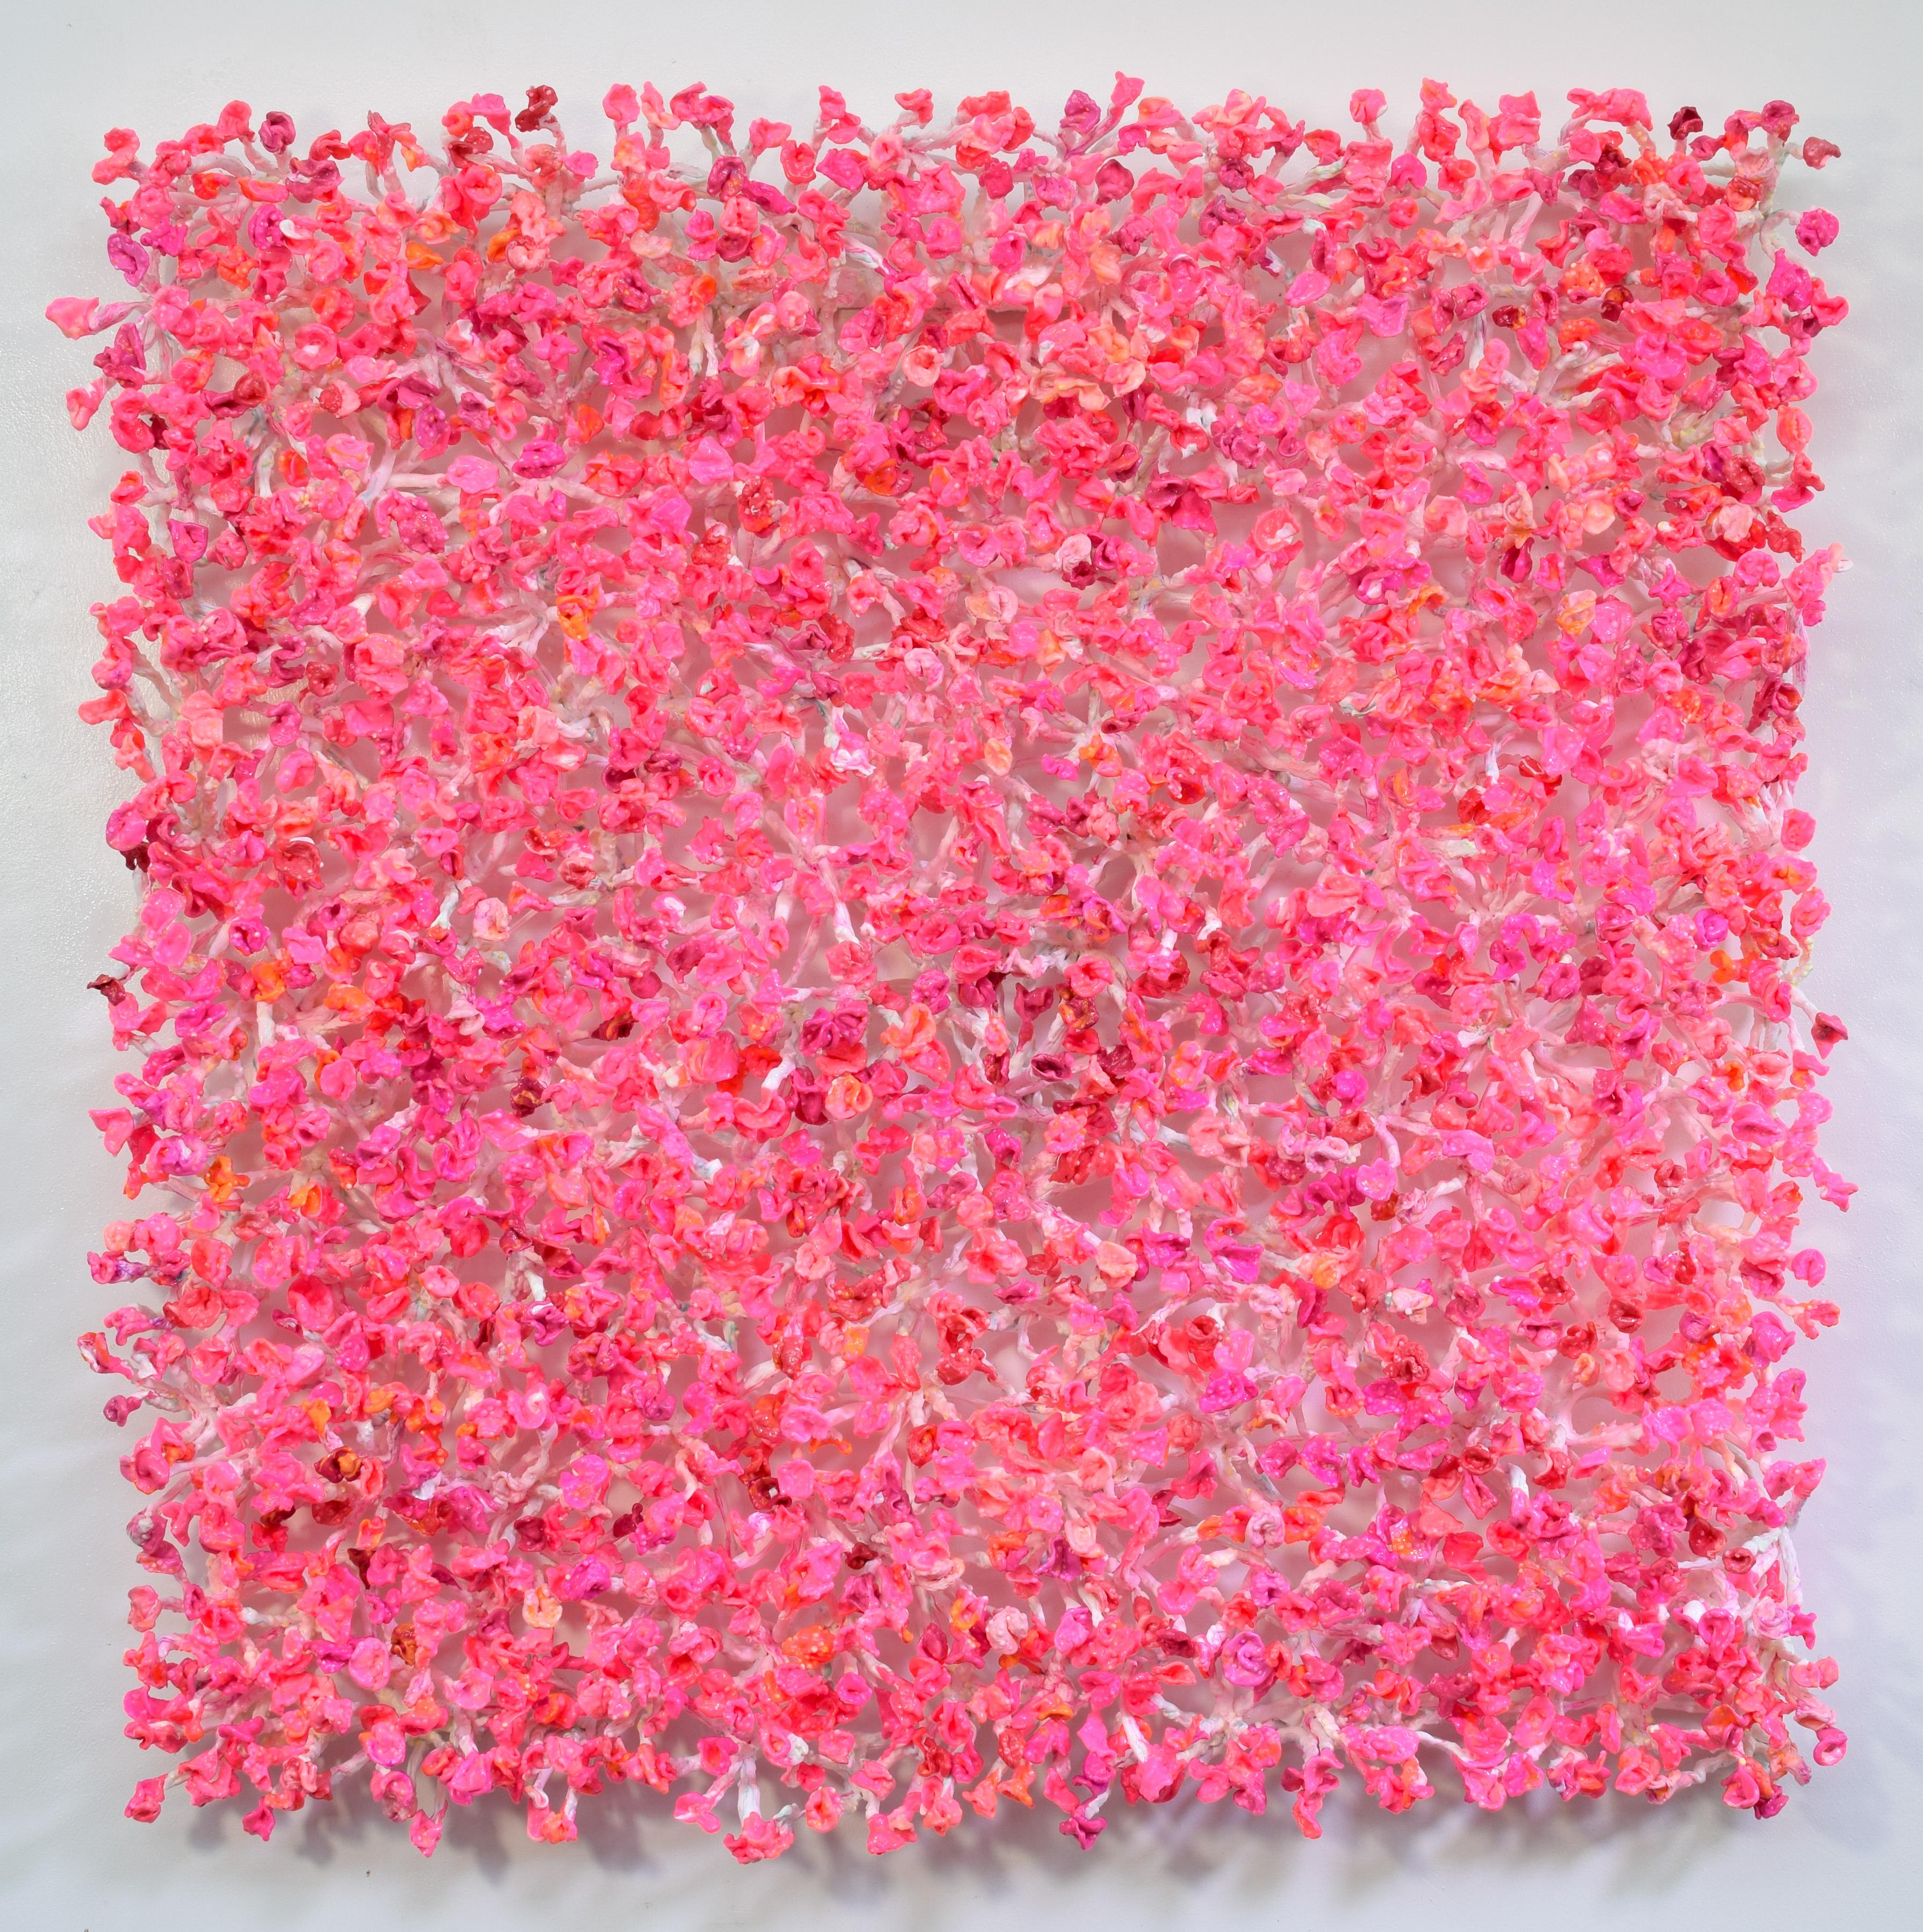 Bloomers Rosé - Mixed Media Art by Stefan Gross